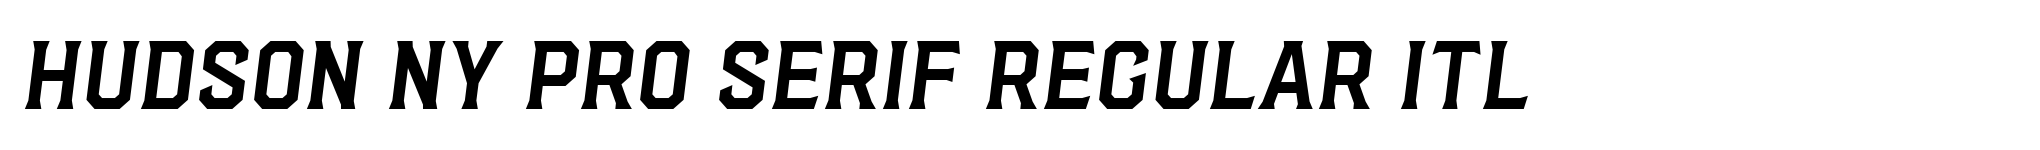 Hudson NY Pro Serif Regular Itl image